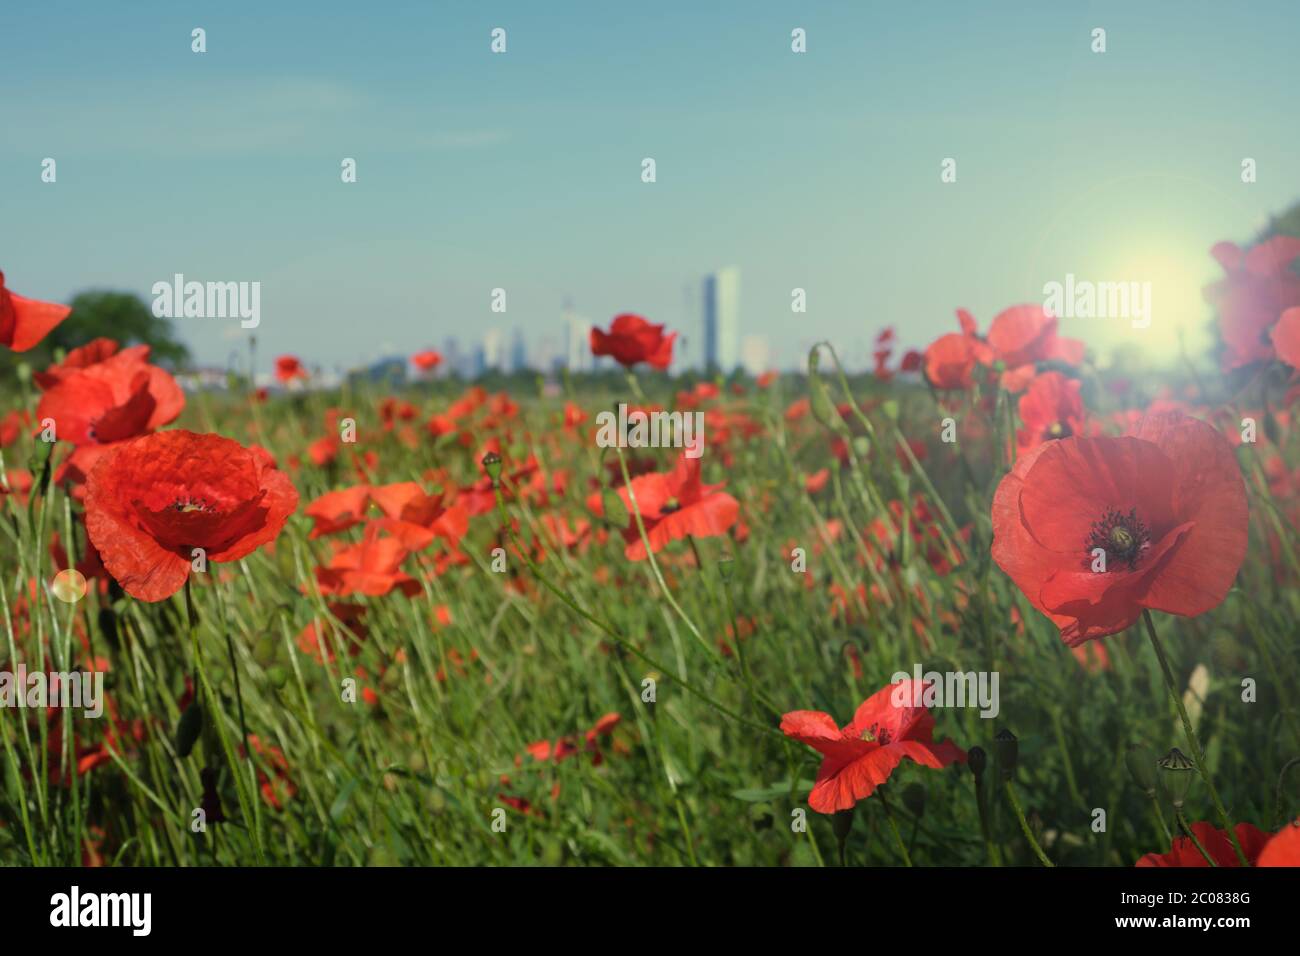 Germany, Hessen, Frankfurt am Main, Ein Moonblumenfeld mit Blick auf die Frankfurter Skyline beim Sonnenuntergang Stock Photo